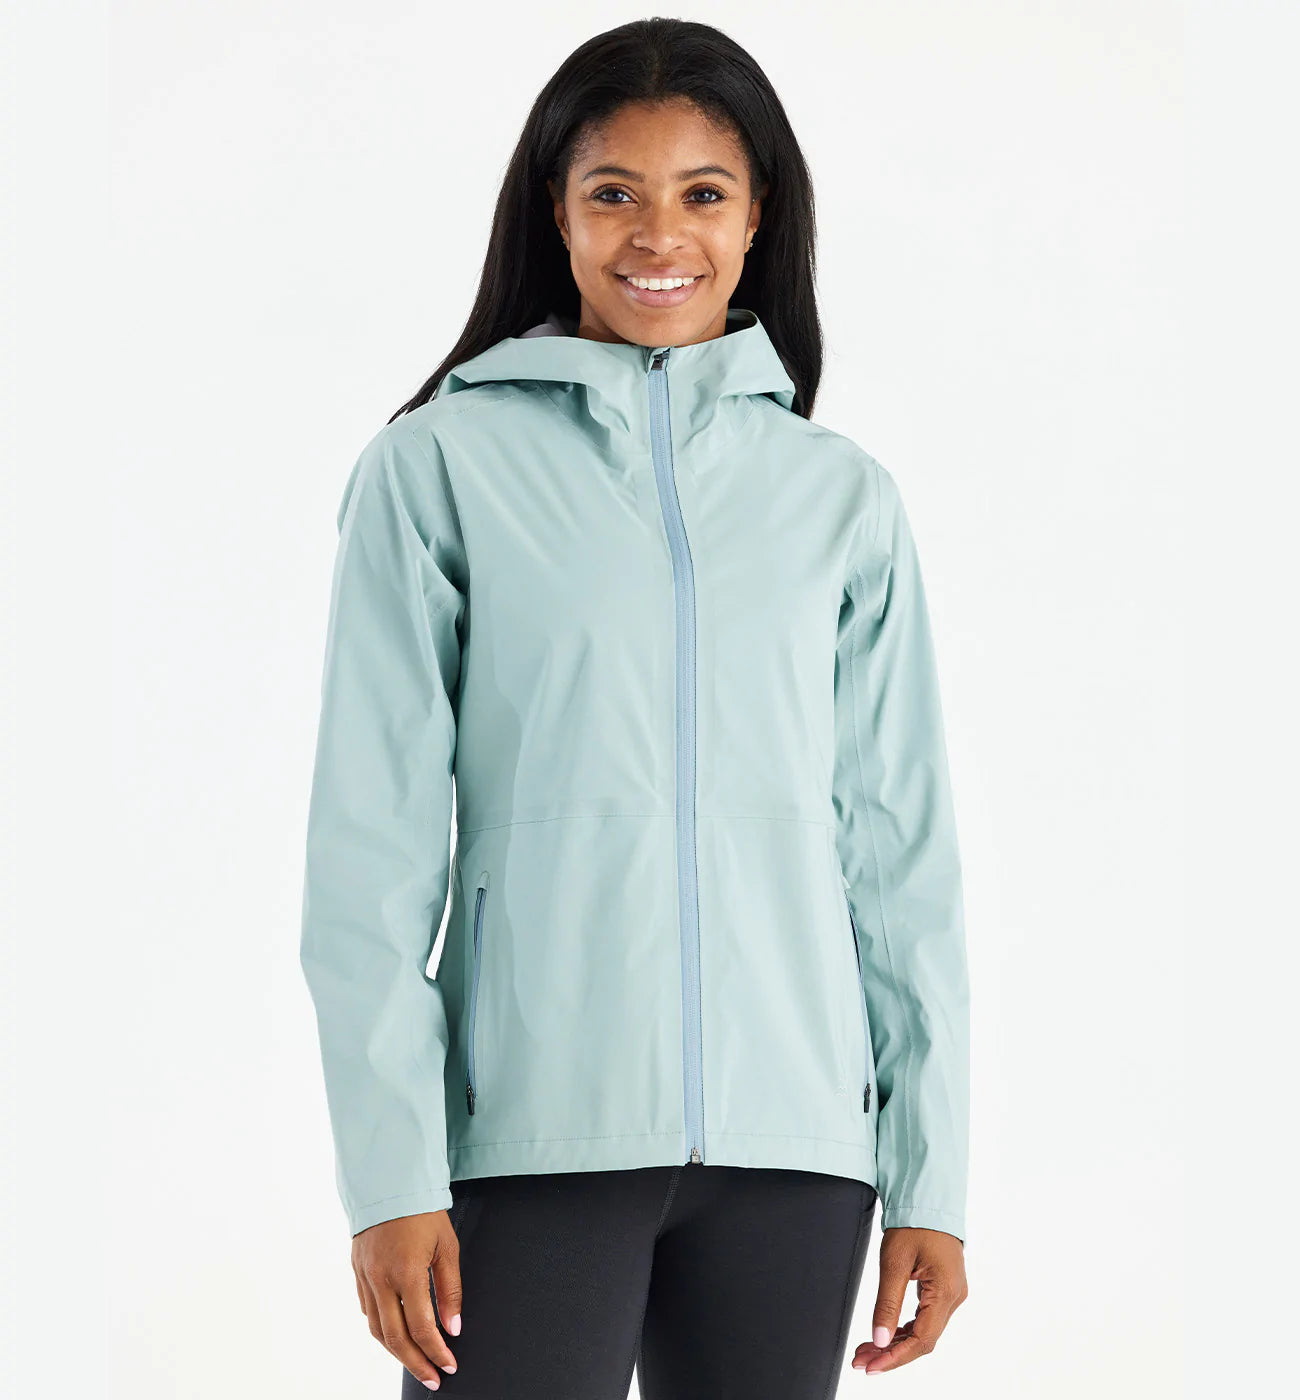 Women's Cloudshield Rain Jacket | Light Women's Rain Jacket – Free Fly  Apparel